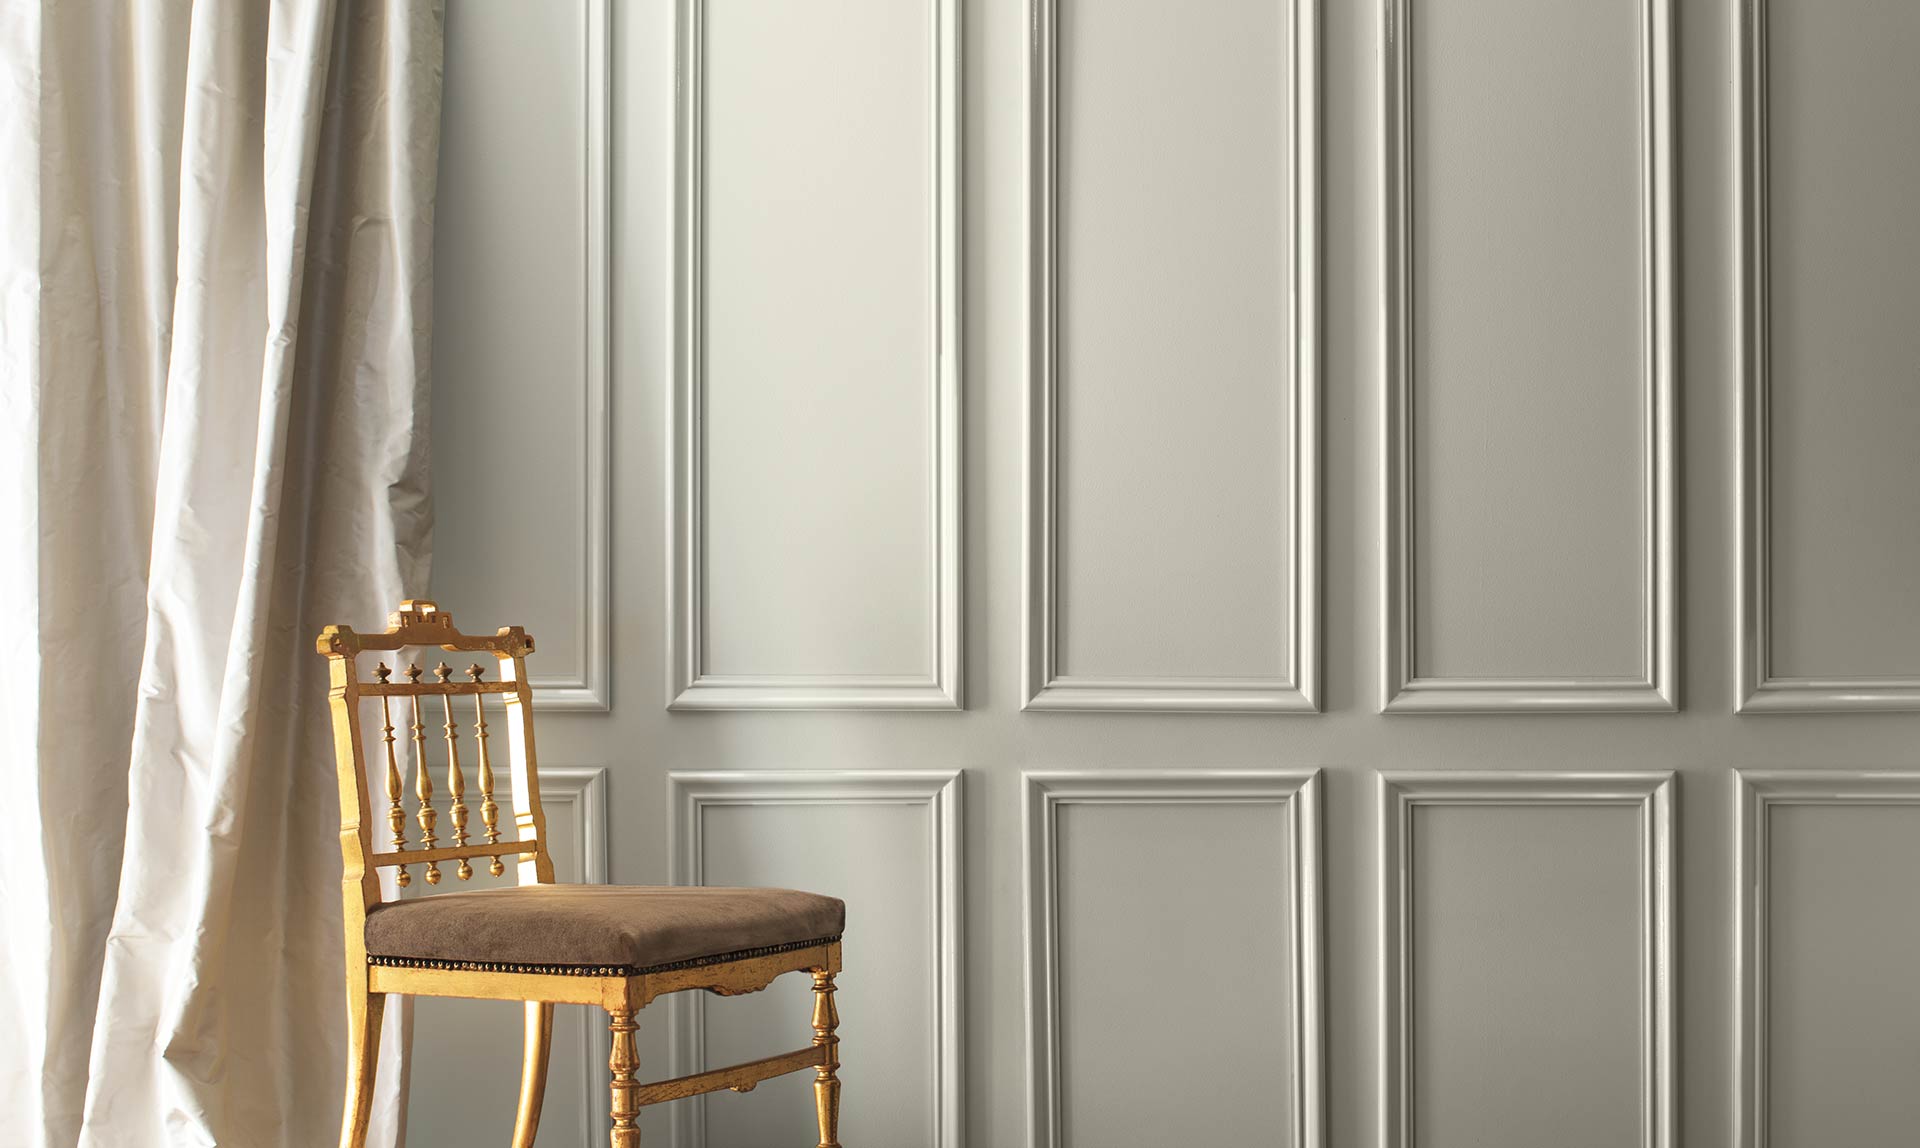 Un mur peint en gris et des rideaux de soie crème encadrent une chaise élégante en bois doré. Couleur de l’année 2019